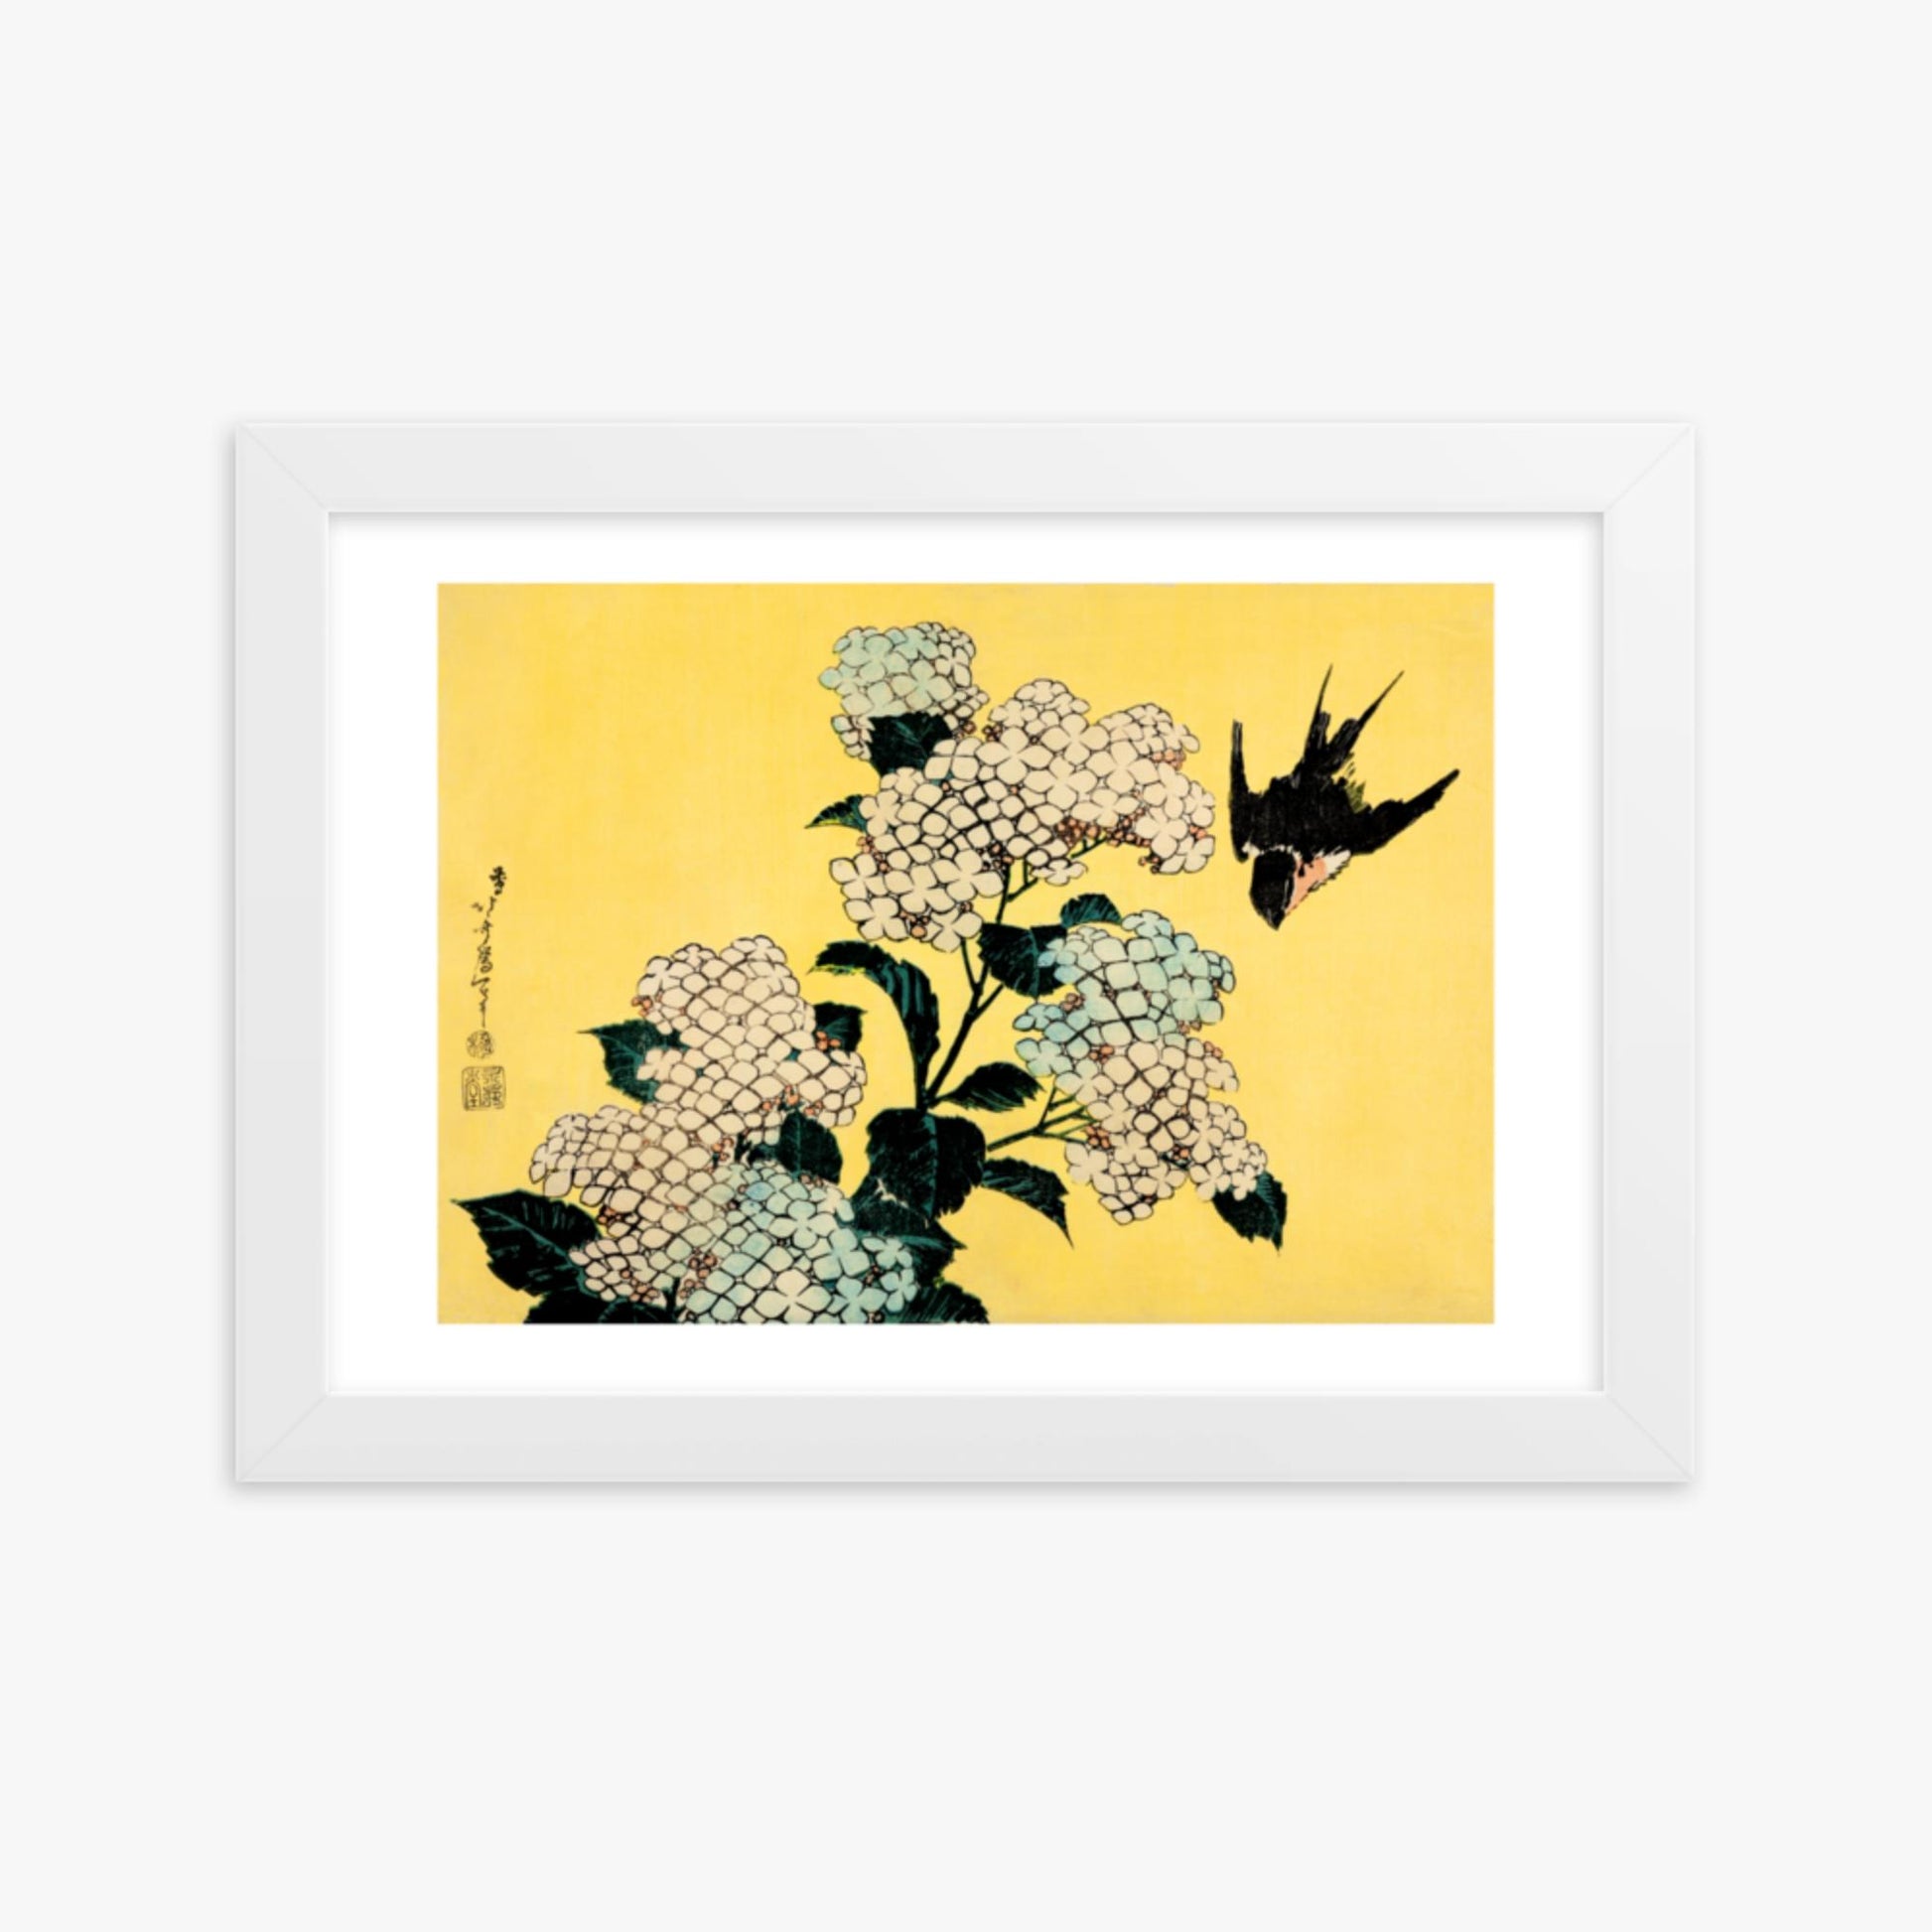 Katsushika Hokusai - Hydrangea and Swallow 21x30 cm Poster With White Frame